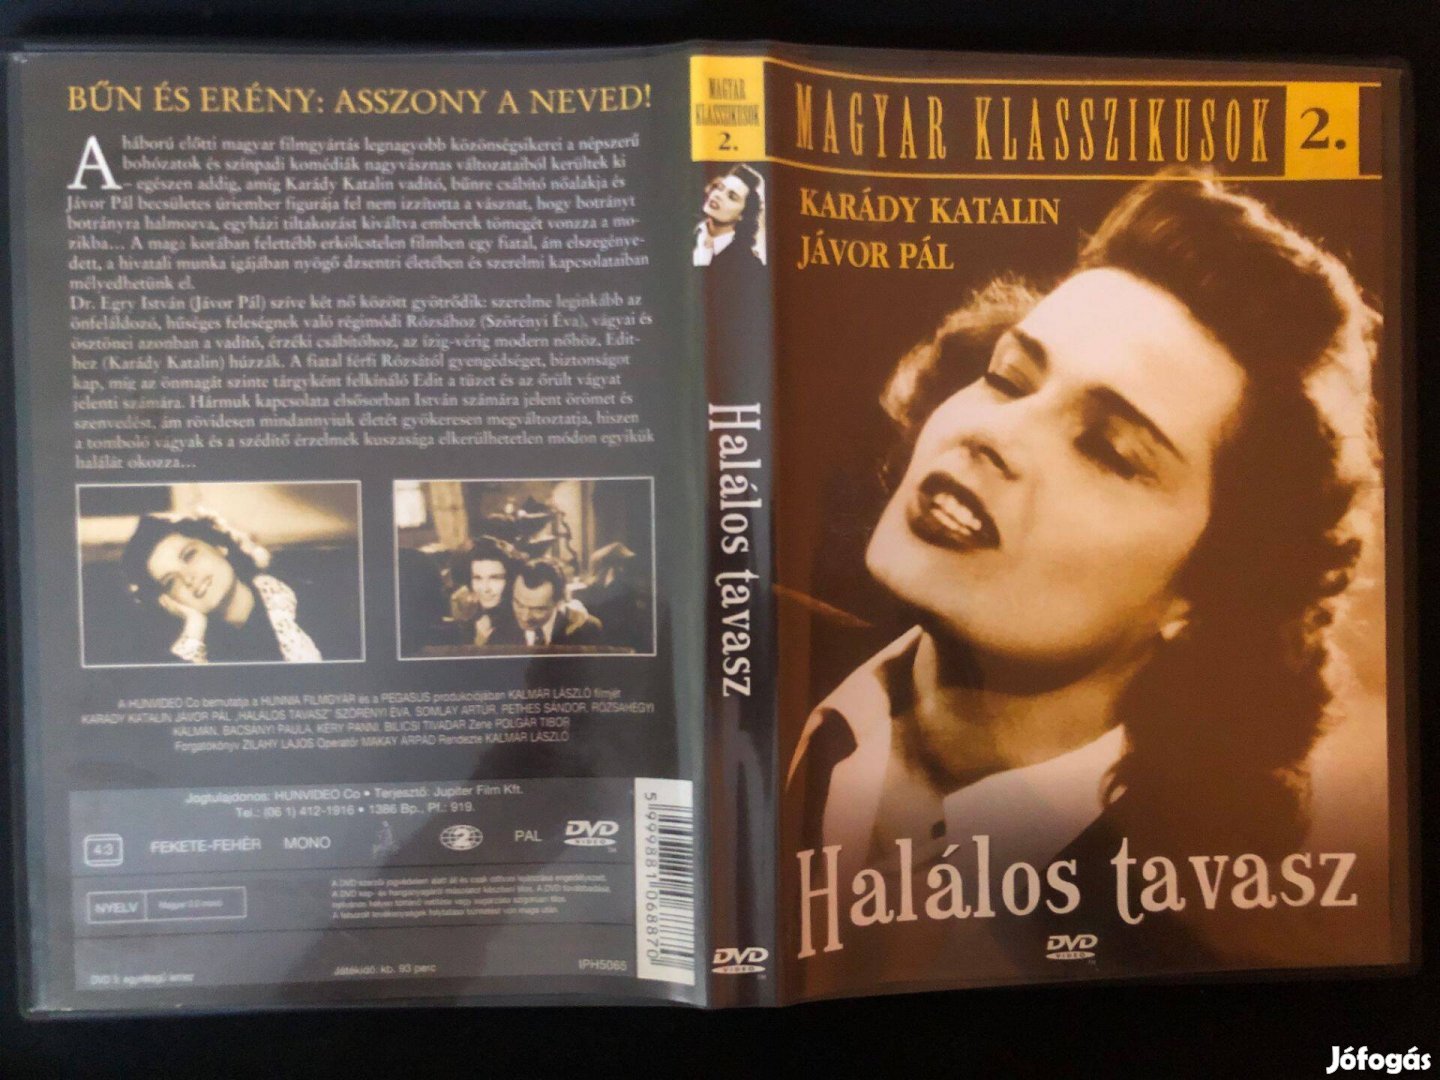 Halálos tavasz Magyar klasszikusok 2. karcmentes, Karády Katalin DVD